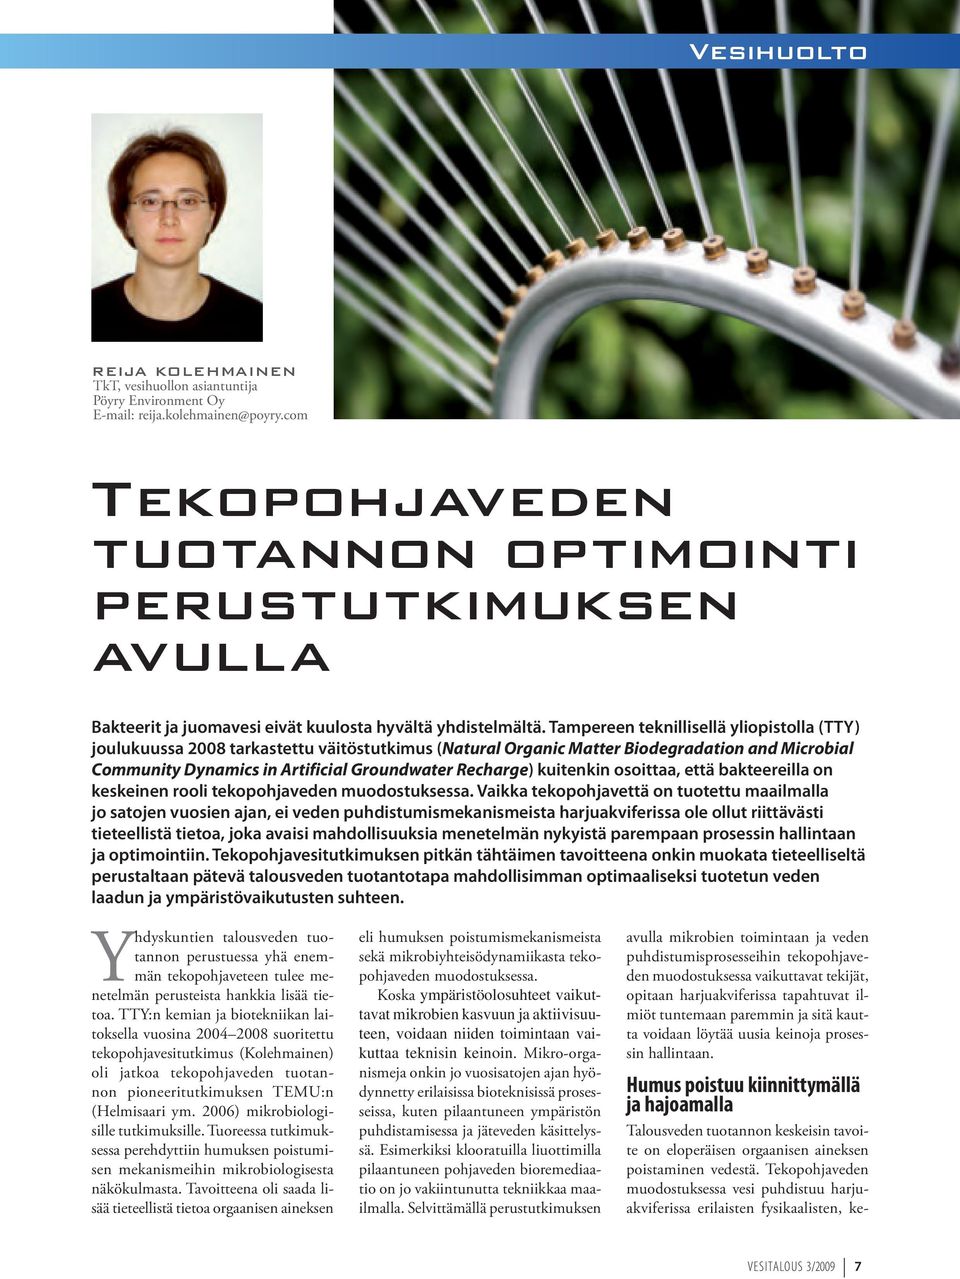 Tampereen teknillisellä yliopistolla (TTY) joulukuussa 2008 tarkastettu väitöstutkimus (Natural Organic Matter Biodegradation and Microbial Community Dynamics in Artificial Groundwater Recharge)